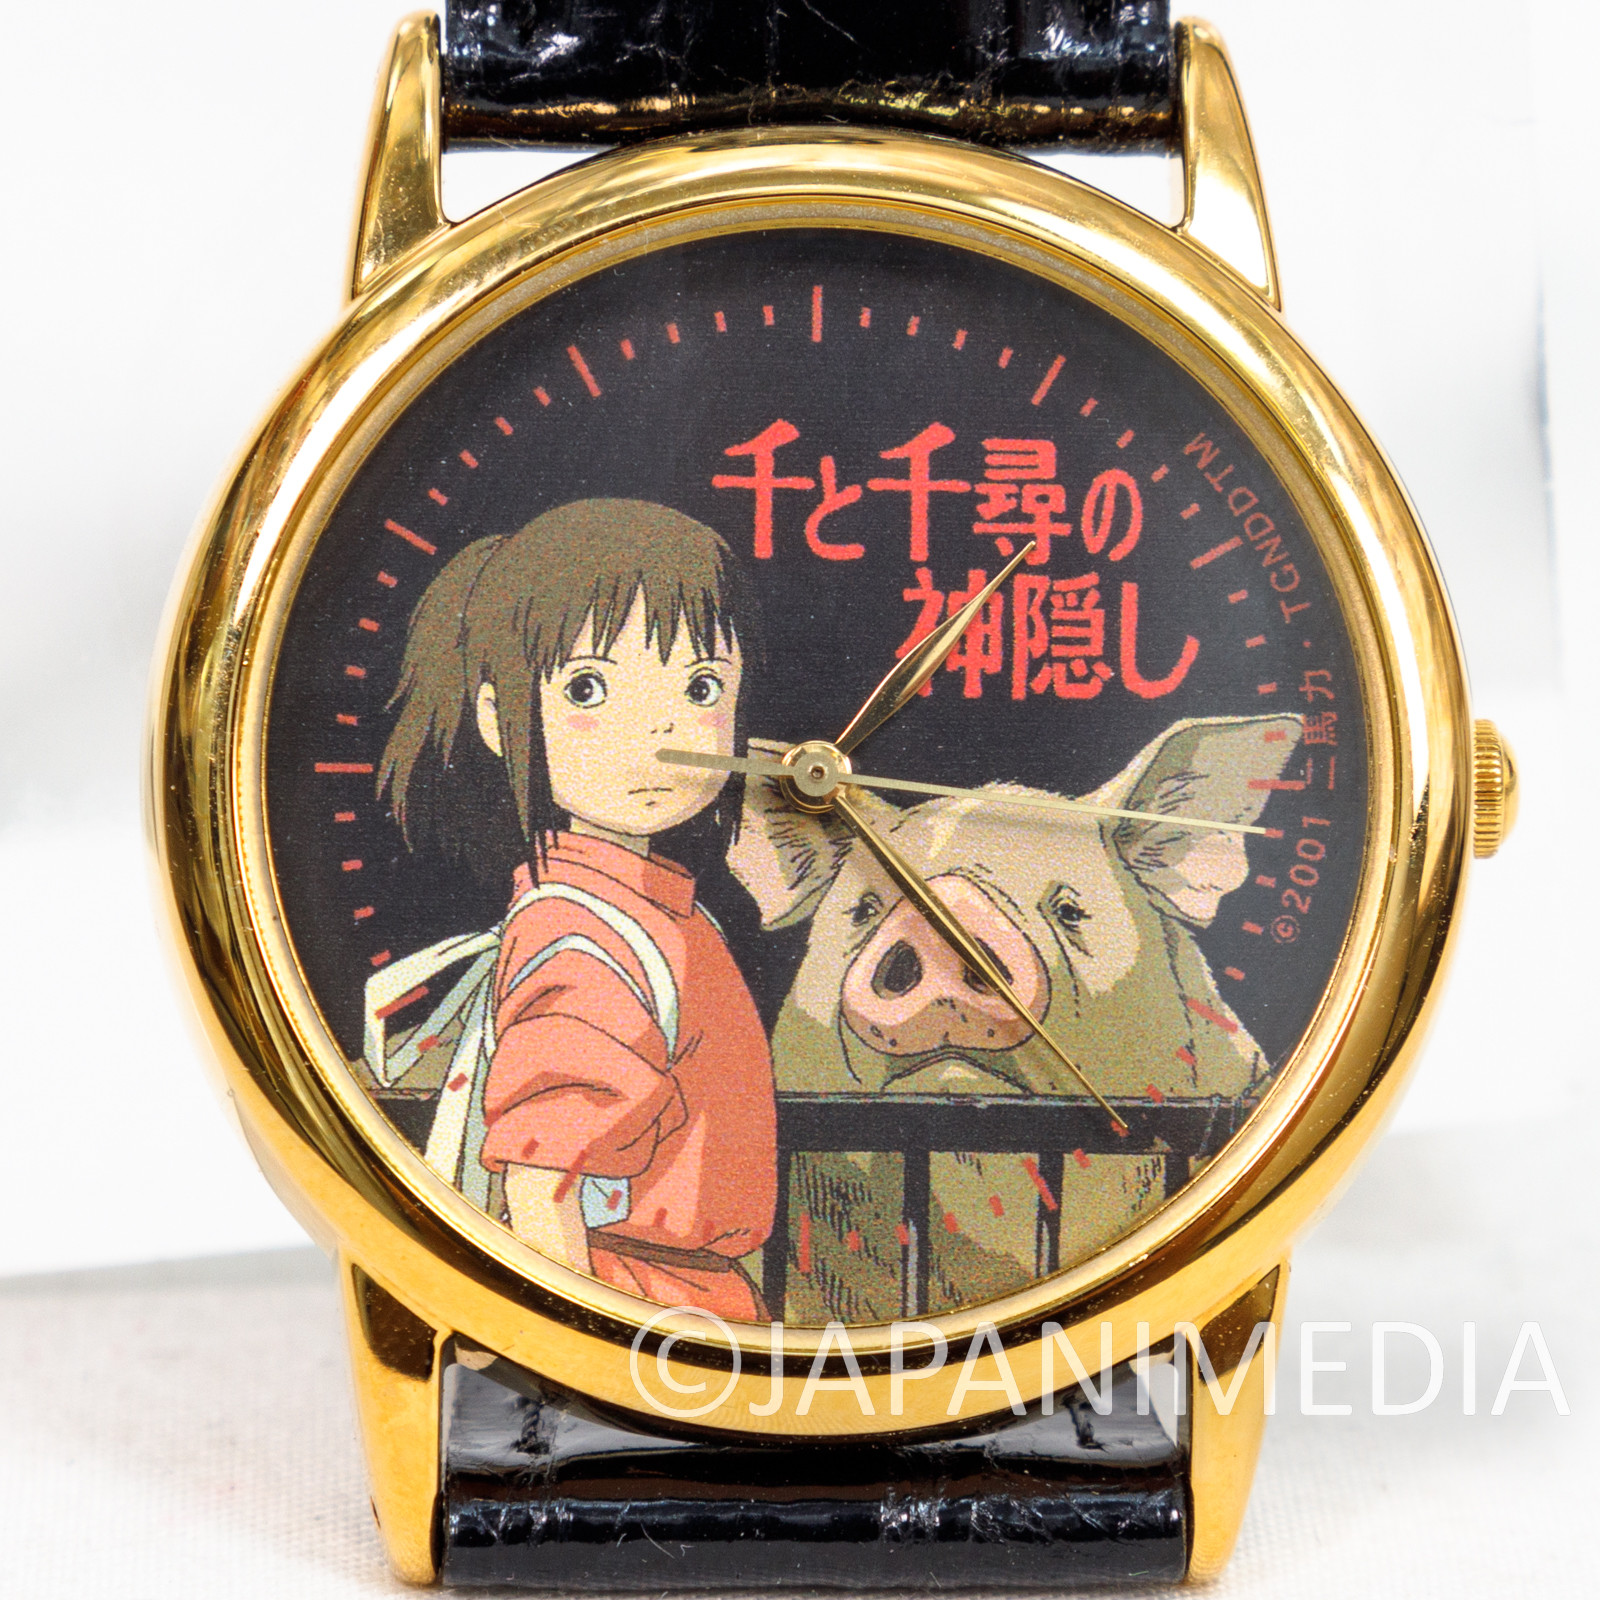 RARE Spirited Away Chihiro Wrist Watch Ghibli JAPAN ANIME